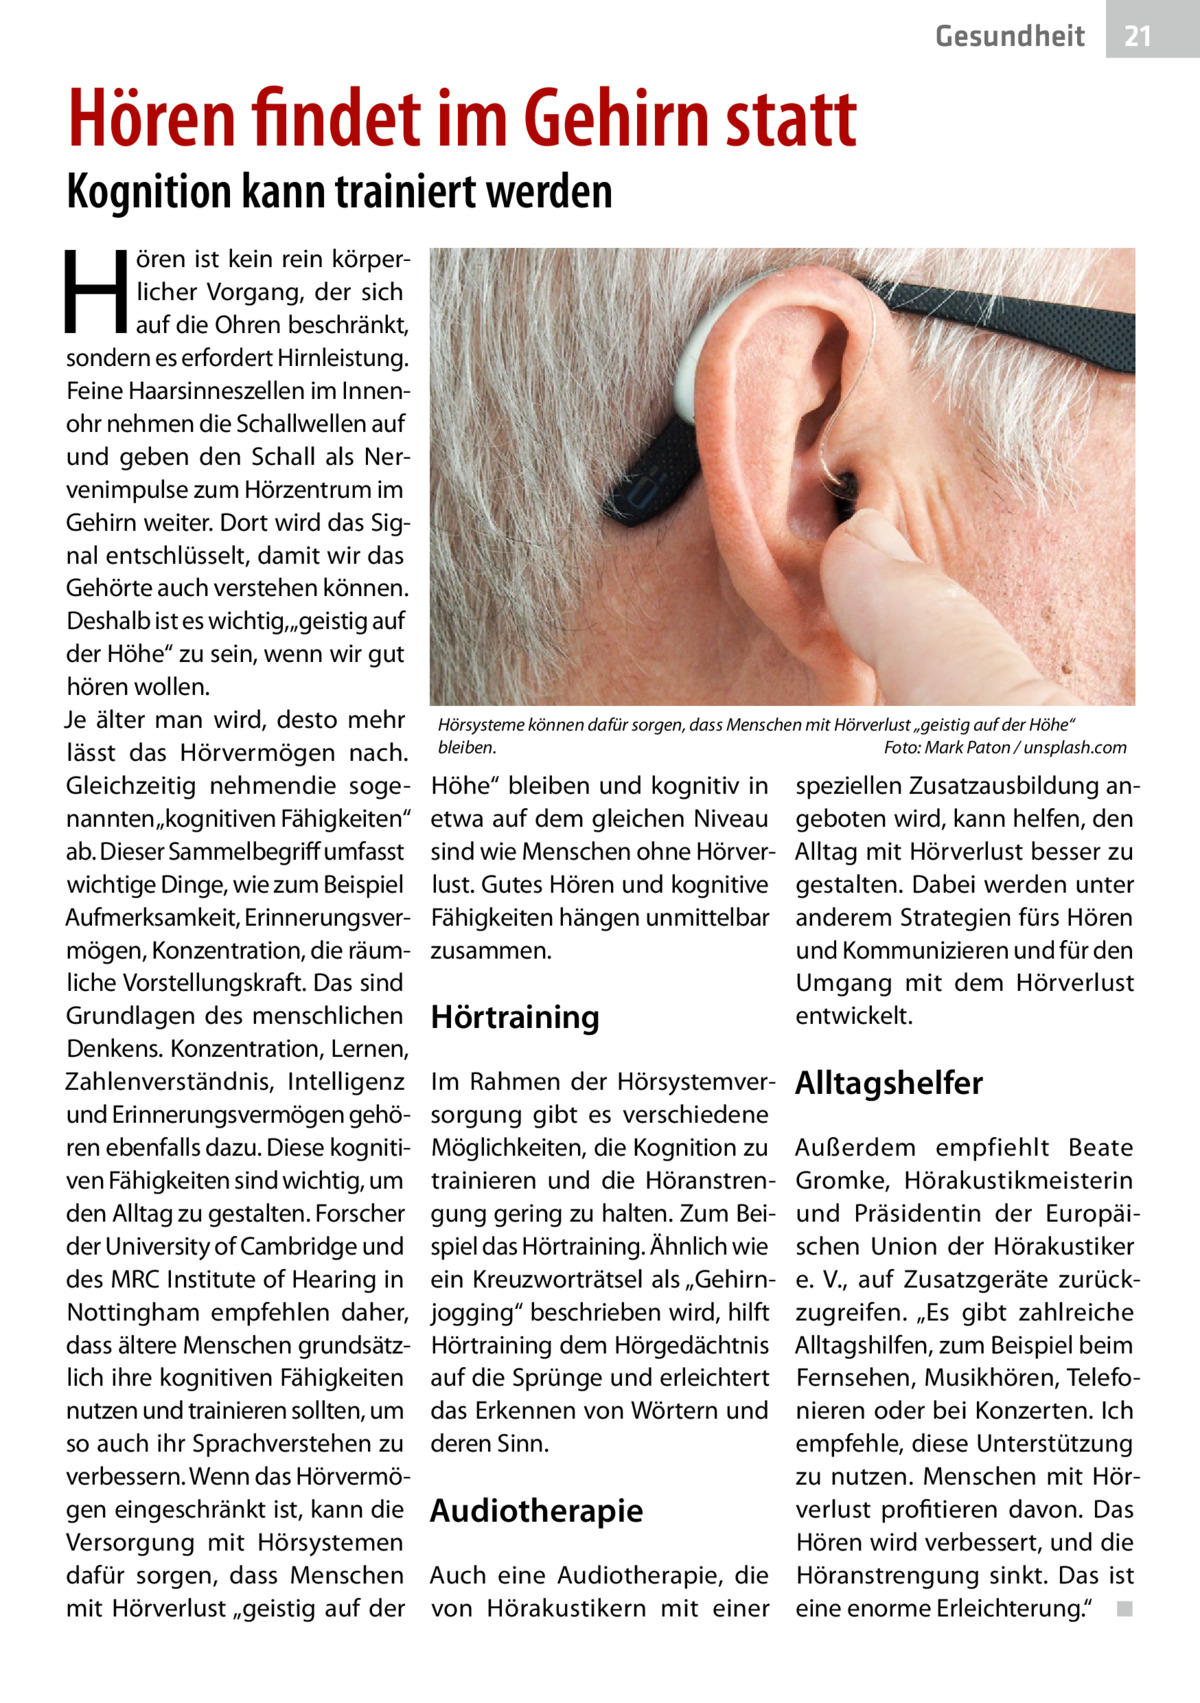 Gesundheit  21  Hören findet im Gehirn statt  Kognition kann trainiert werden  H  ören ist kein rein körperlicher Vorgang, der sich auf die Ohren beschränkt, sondern es erfordert Hirnleistung. Feine Haarsinneszellen im Innenohr nehmen die Schallwellen auf und geben den Schall als Nervenimpulse zum Hörzentrum im Gehirn weiter. Dort wird das Signal entschlüsselt, damit wir das Gehörte auch verstehen können. Deshalb ist es wichtig,„geistig auf der Höhe“ zu sein, wenn wir gut hören wollen. Je älter man wird, desto mehr lässt das Hörvermögen nach. Gleichzeitig nehmendie sogenannten „kognitiven Fähigkeiten“ ab. Dieser Sammelbegriff umfasst wichtige Dinge, wie zum Beispiel Aufmerksamkeit, Erinnerungsvermögen, Konzentration, die räumliche Vorstellungskraft. Das sind Grundlagen des menschlichen Denkens. Konzentration, Lernen, Zahlenverständnis, Intelligenz und Erinnerungsvermögen gehören ebenfalls dazu. Diese kognitiven Fähigkeiten sind wichtig, um den Alltag zu gestalten. Forscher der University of Cambridge und des MRC Institute of Hearing in Nottingham empfehlen daher, dass ältere Menschen grundsätzlich ihre kognitiven Fähigkeiten nutzen und trainieren sollten, um so auch ihr Sprachverstehen zu verbessern. Wenn das Hörvermögen eingeschränkt ist, kann die Versorgung mit Hörsystemen dafür sorgen, dass Menschen mit Hörverlust „geistig auf der  Hörsysteme können dafür sorgen, dass Menschen mit Hörverlust „geistig auf der Höhe“ bleiben.� Foto: Mark Paton / unsplash.com  Höhe“ bleiben und kognitiv in etwa auf dem gleichen Niveau sind wie Menschen ohne Hörverlust. Gutes Hören und kognitive Fähigkeiten hängen unmittelbar zusammen.  Hörtraining Im Rahmen der Hörsystemversorgung gibt es verschiedene Möglichkeiten, die Kognition zu trainieren und die Höranstrengung gering zu halten. Zum Beispiel das Hörtraining. Ähnlich wie ein Kreuzworträtsel als „Gehirnjogging“ beschrieben wird, hilft Hörtraining dem Hörgedächtnis auf die Sprünge und erleichtert das Erkennen von Wörtern und deren Sinn.  speziellen Zusatzausbildung angeboten wird, kann helfen, den Alltag mit Hörverlust besser zu gestalten. Dabei werden unter anderem Strategien fürs Hören und Kommunizieren und für den Umgang mit dem Hörverlust entwickelt.  Alltagshelfer  Außerdem empfiehlt Beate Gromke, Hörakustikmeisterin und Präsidentin der Europäischen Union der Hörakustiker e. V., auf Zusatzgeräte zurückzugreifen. „Es gibt zahlreiche Alltagshilfen, zum Beispiel beim Fernsehen, Musikhören, Telefonieren oder bei Konzerten. Ich empfehle, diese Unterstützung zu nutzen. Menschen mit Hörverlust profitieren davon. Das Audiotherapie Hören wird verbessert, und die Auch eine Audiotherapie, die Höranstrengung sinkt. Das ist von Hörakustikern mit einer eine enorme Erleichterung.“� ◾